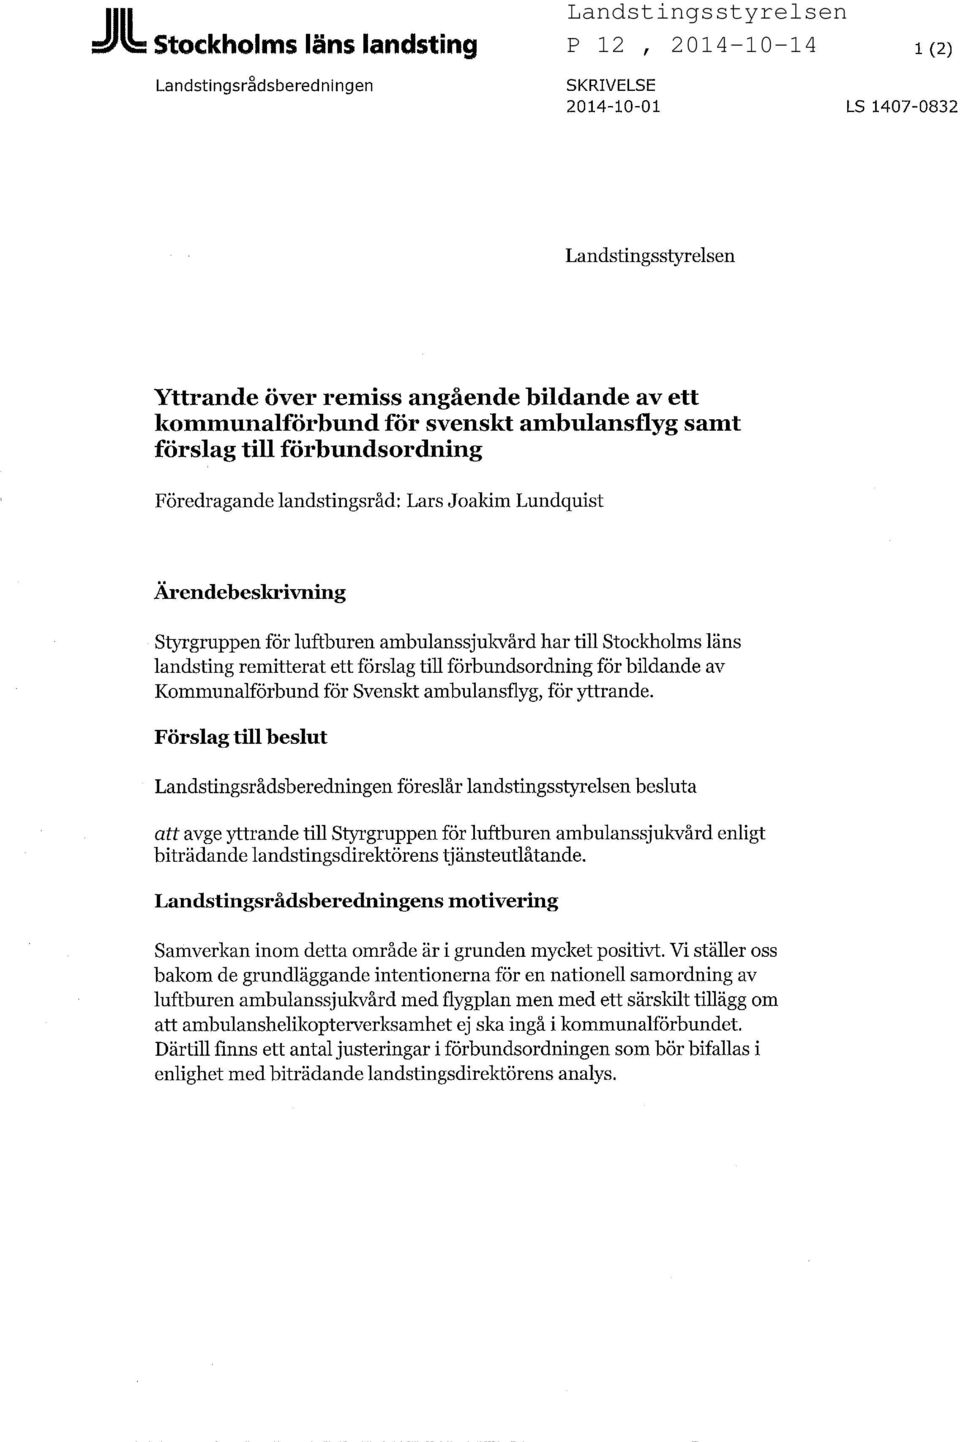 förslag till förbundsordning för bildande av Kommunalförbund för Svenskt ambulansflyg, för yttrande.